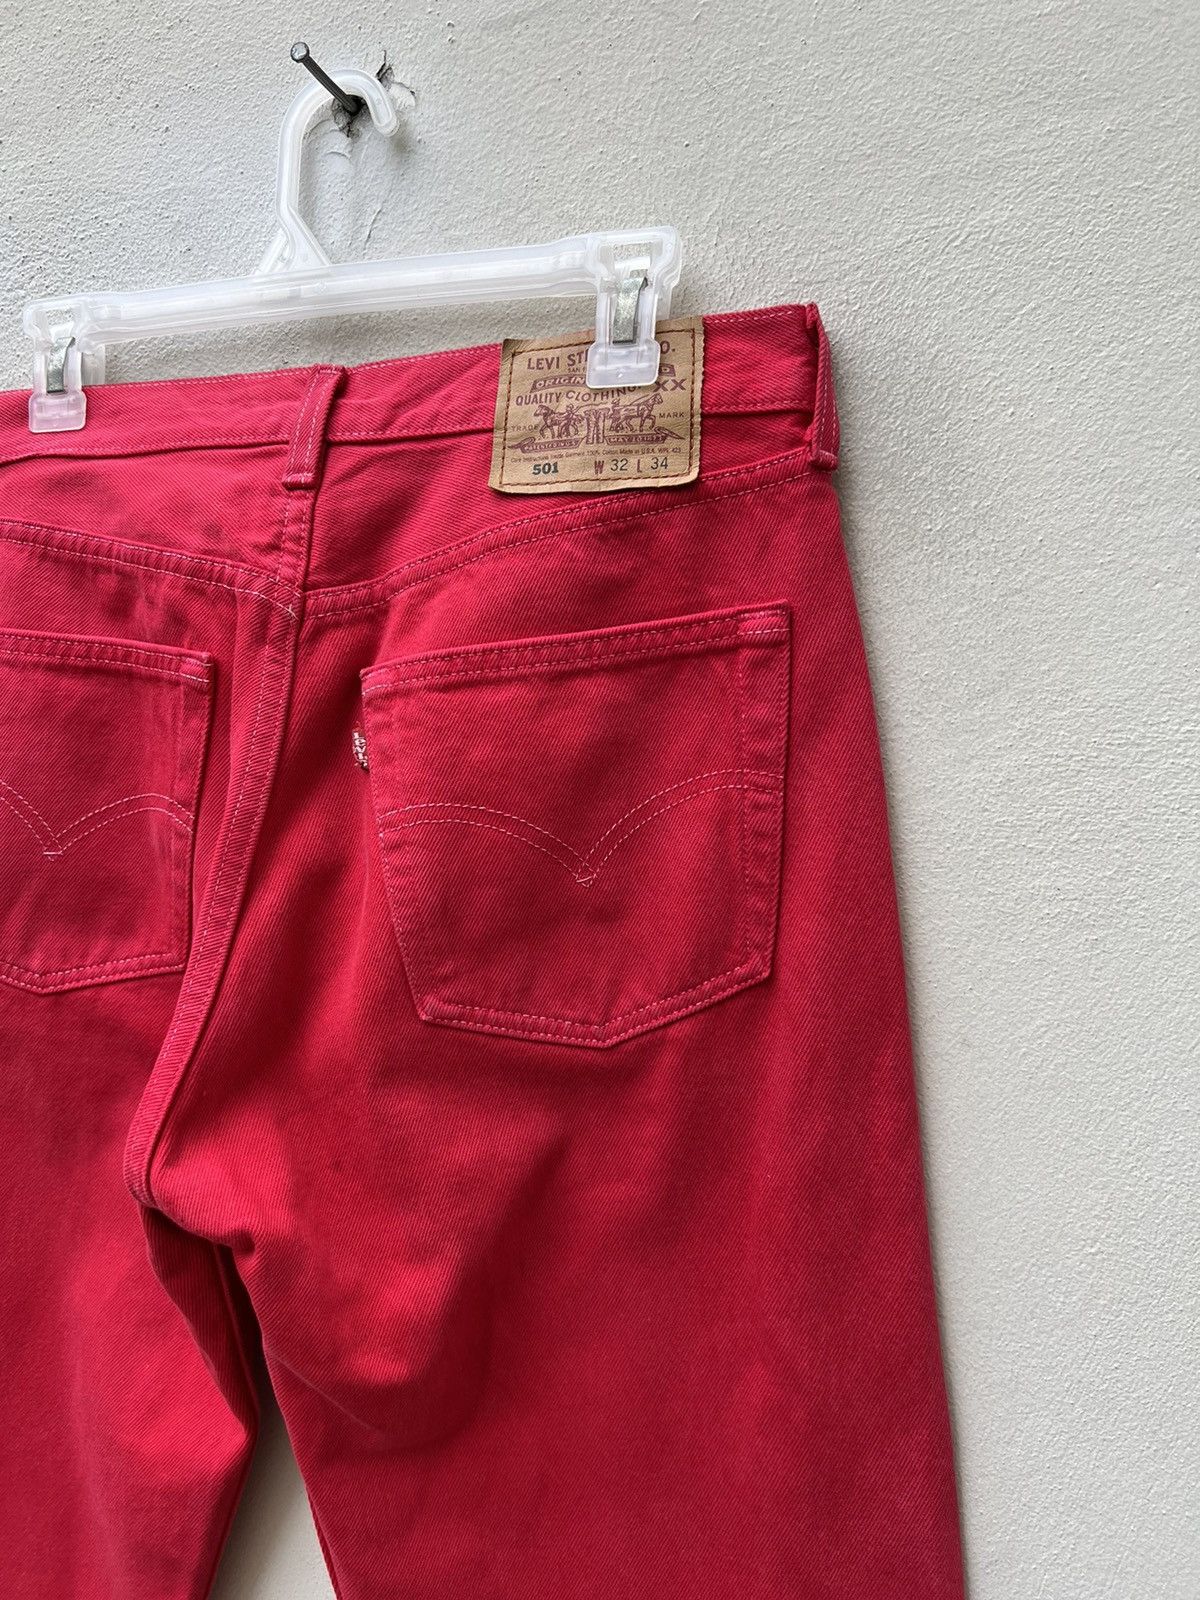 Vintage Vintage 1999 Levi’s 501 Fade Red Denim Jeans Size US 31 - 17 Thumbnail